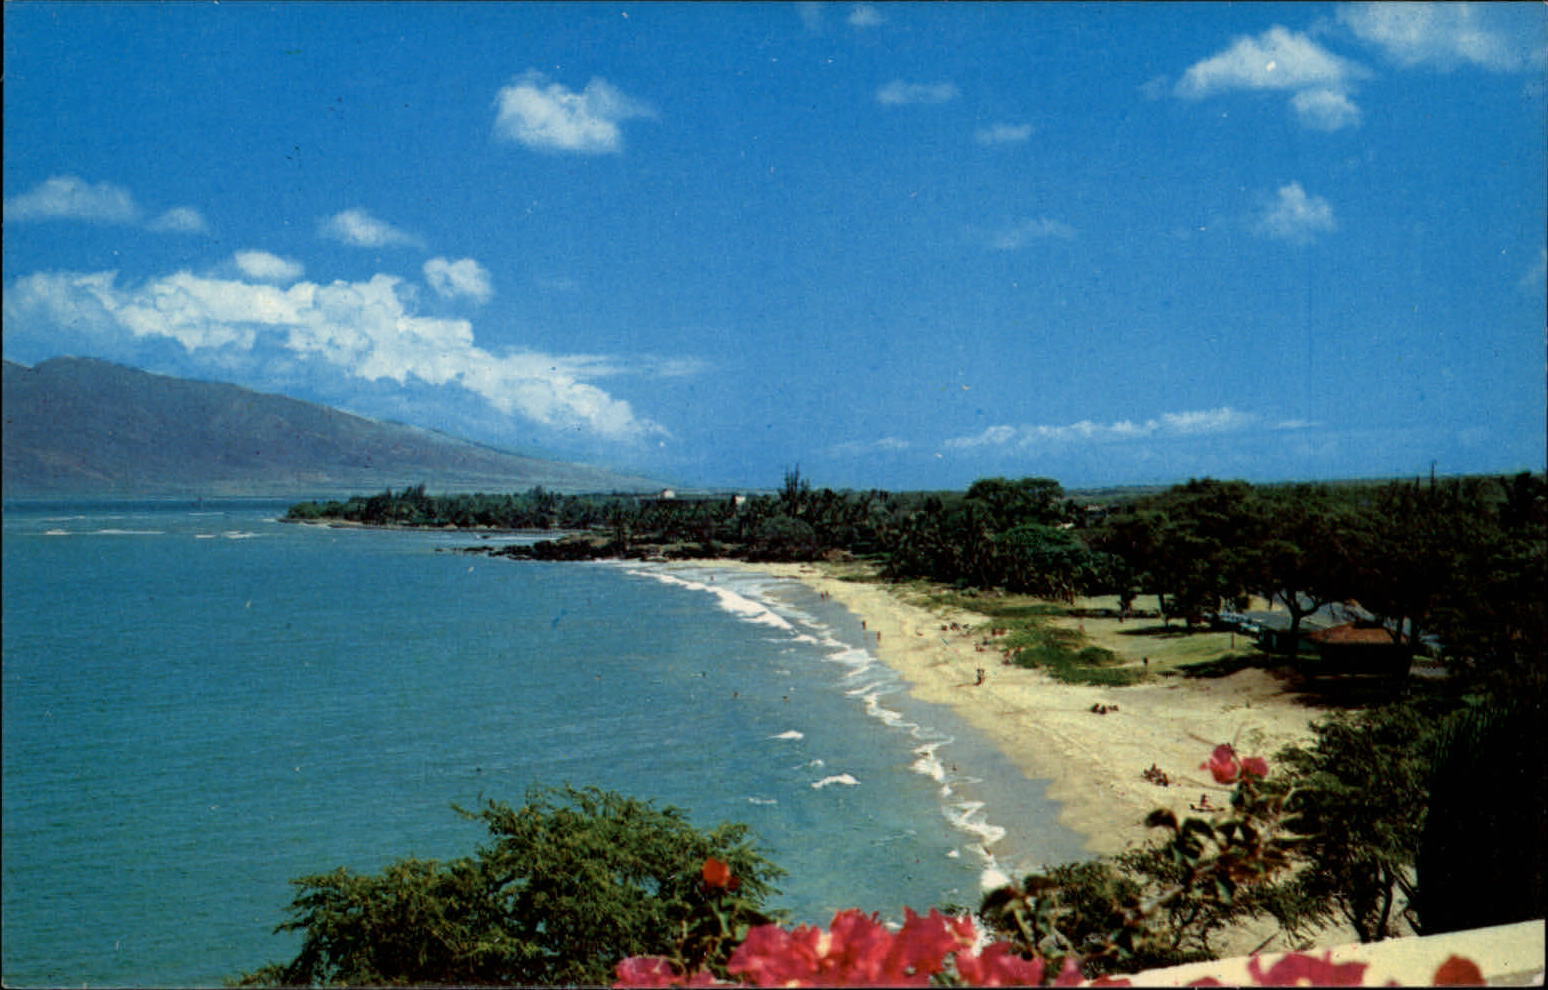 Kihei Maui Hawaii Kamaole Beach Park white sand tropical scene vintage postcard